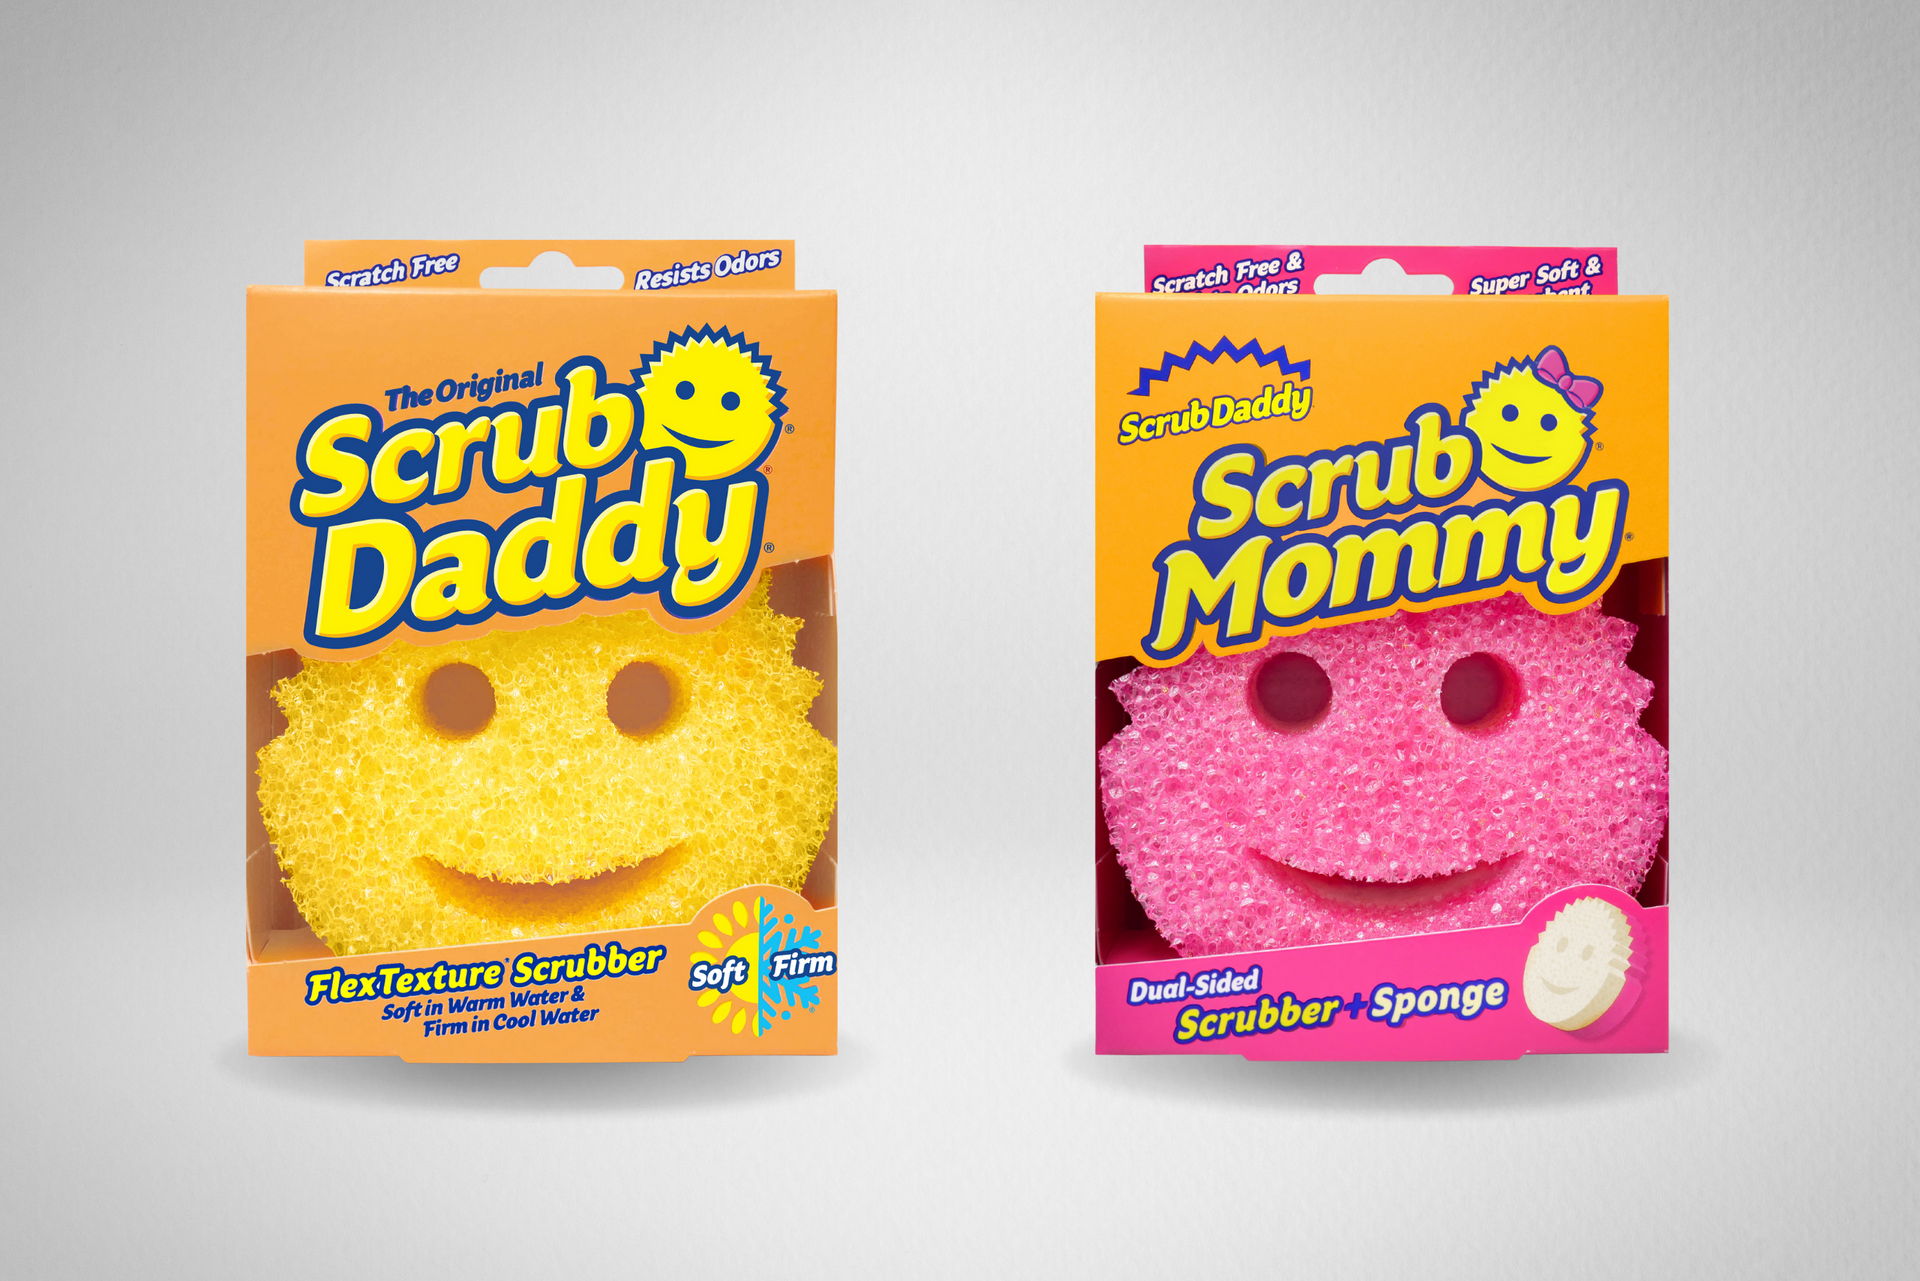 Scratch-Free Scrub Daddy